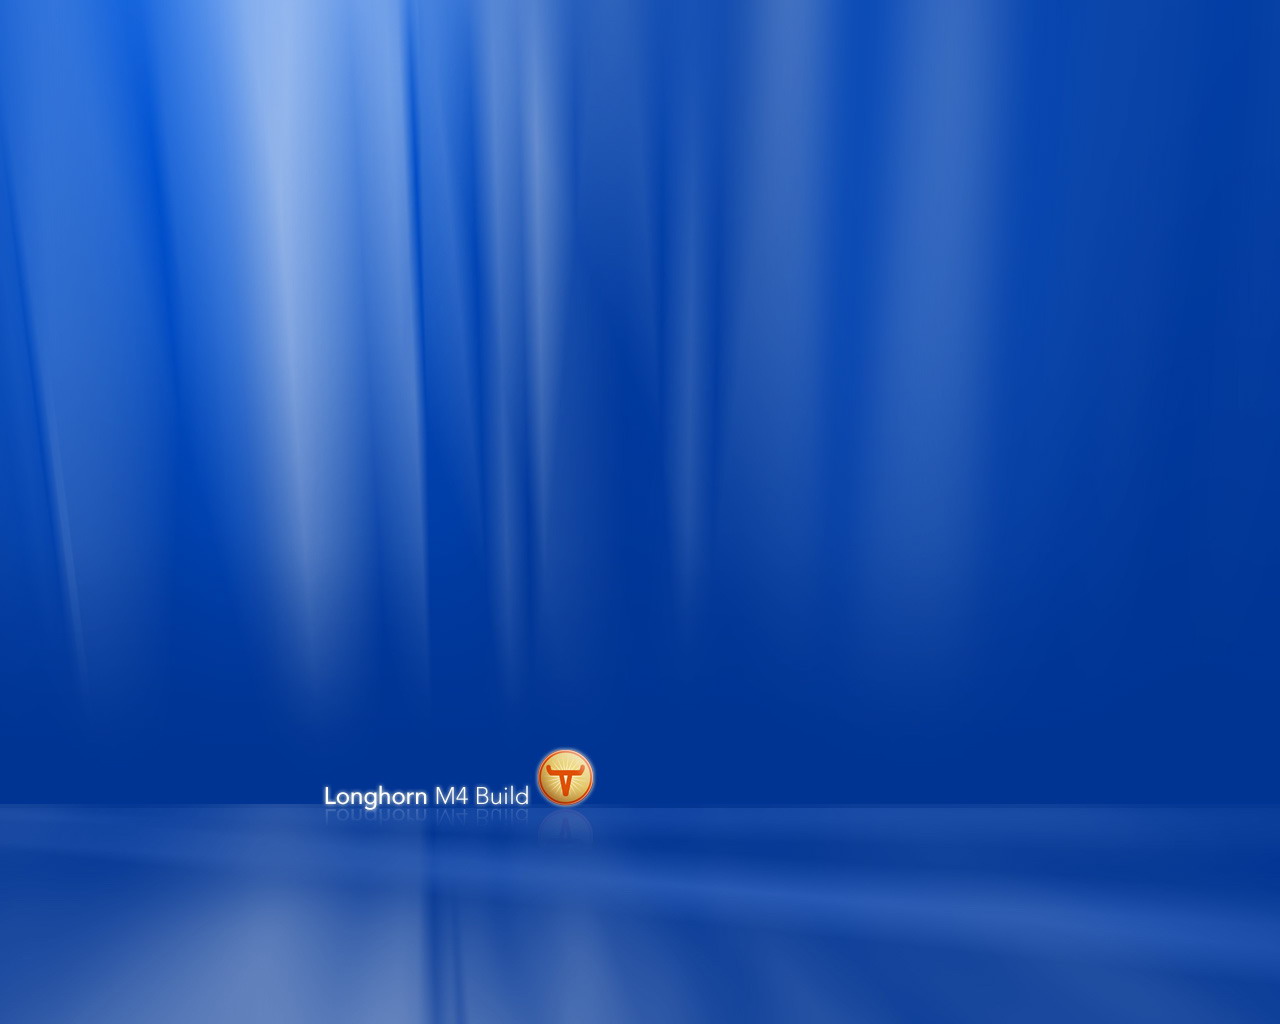 carta da parati longhorn di windows,blu,blu elettrico,cielo,sistema operativo